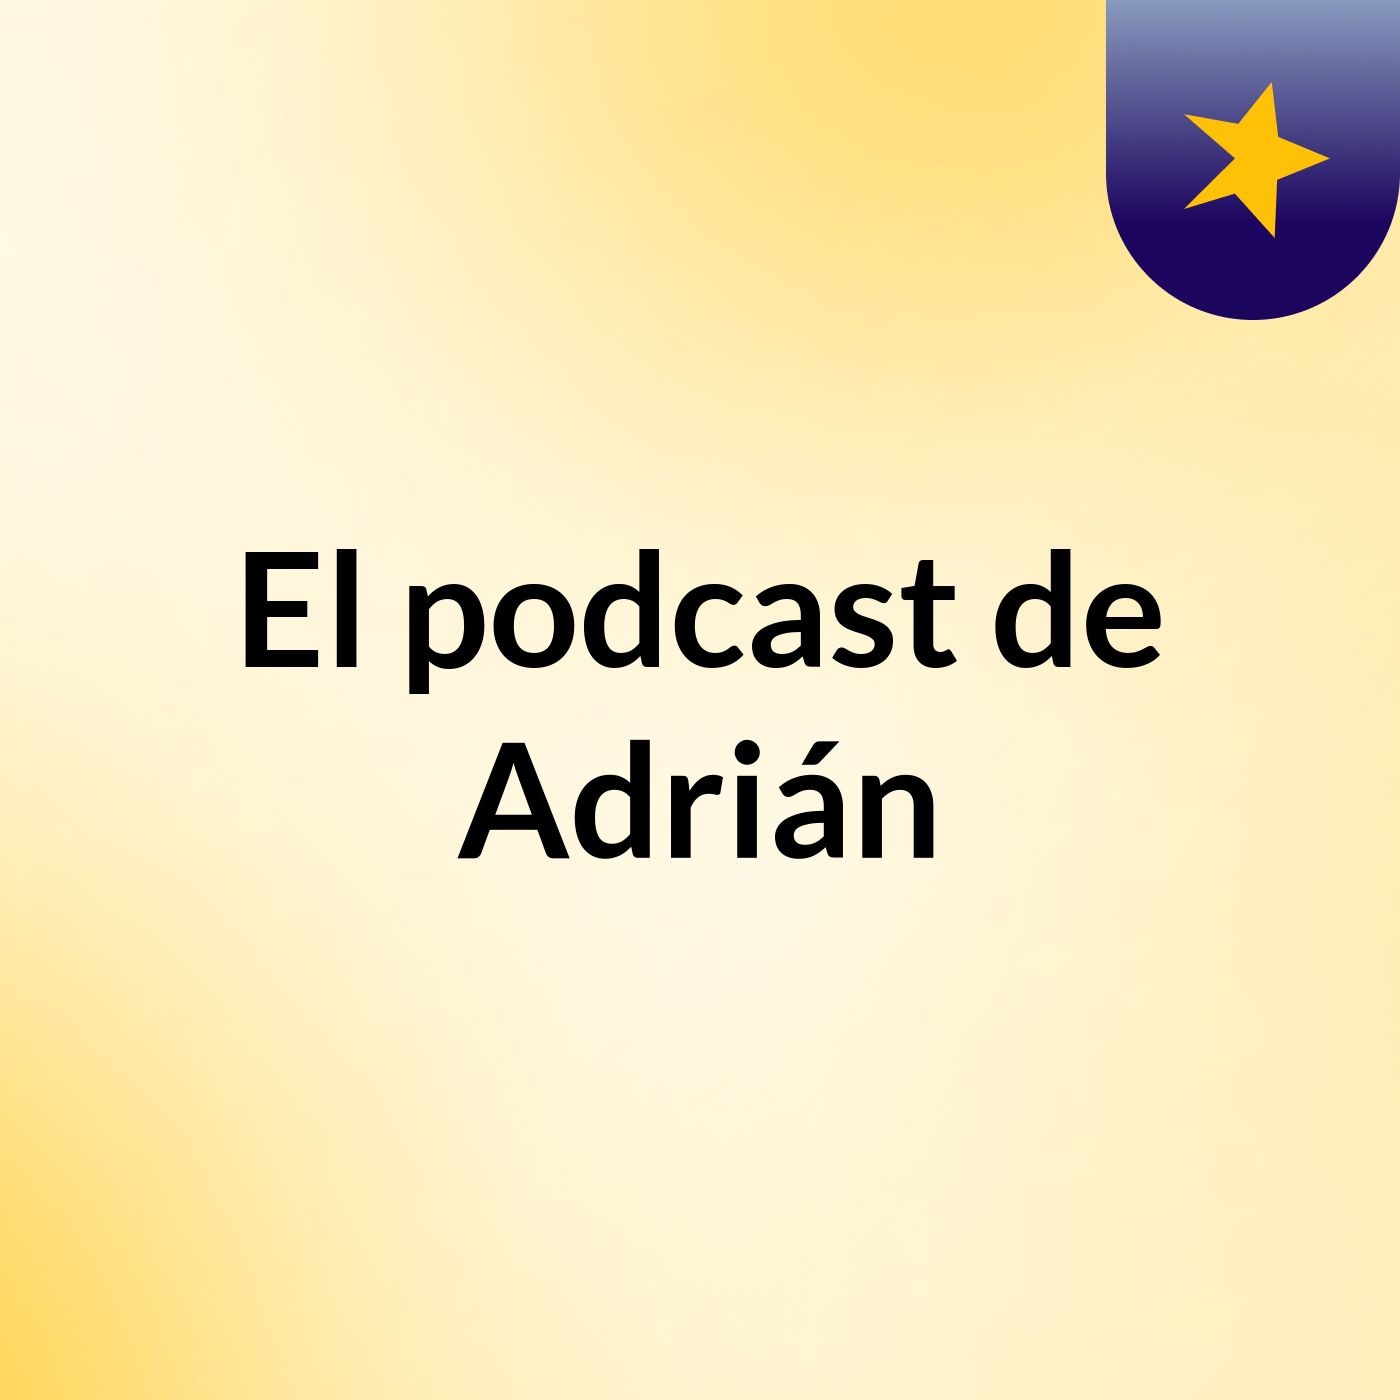 Episodio 3 - El podcast de Adrián